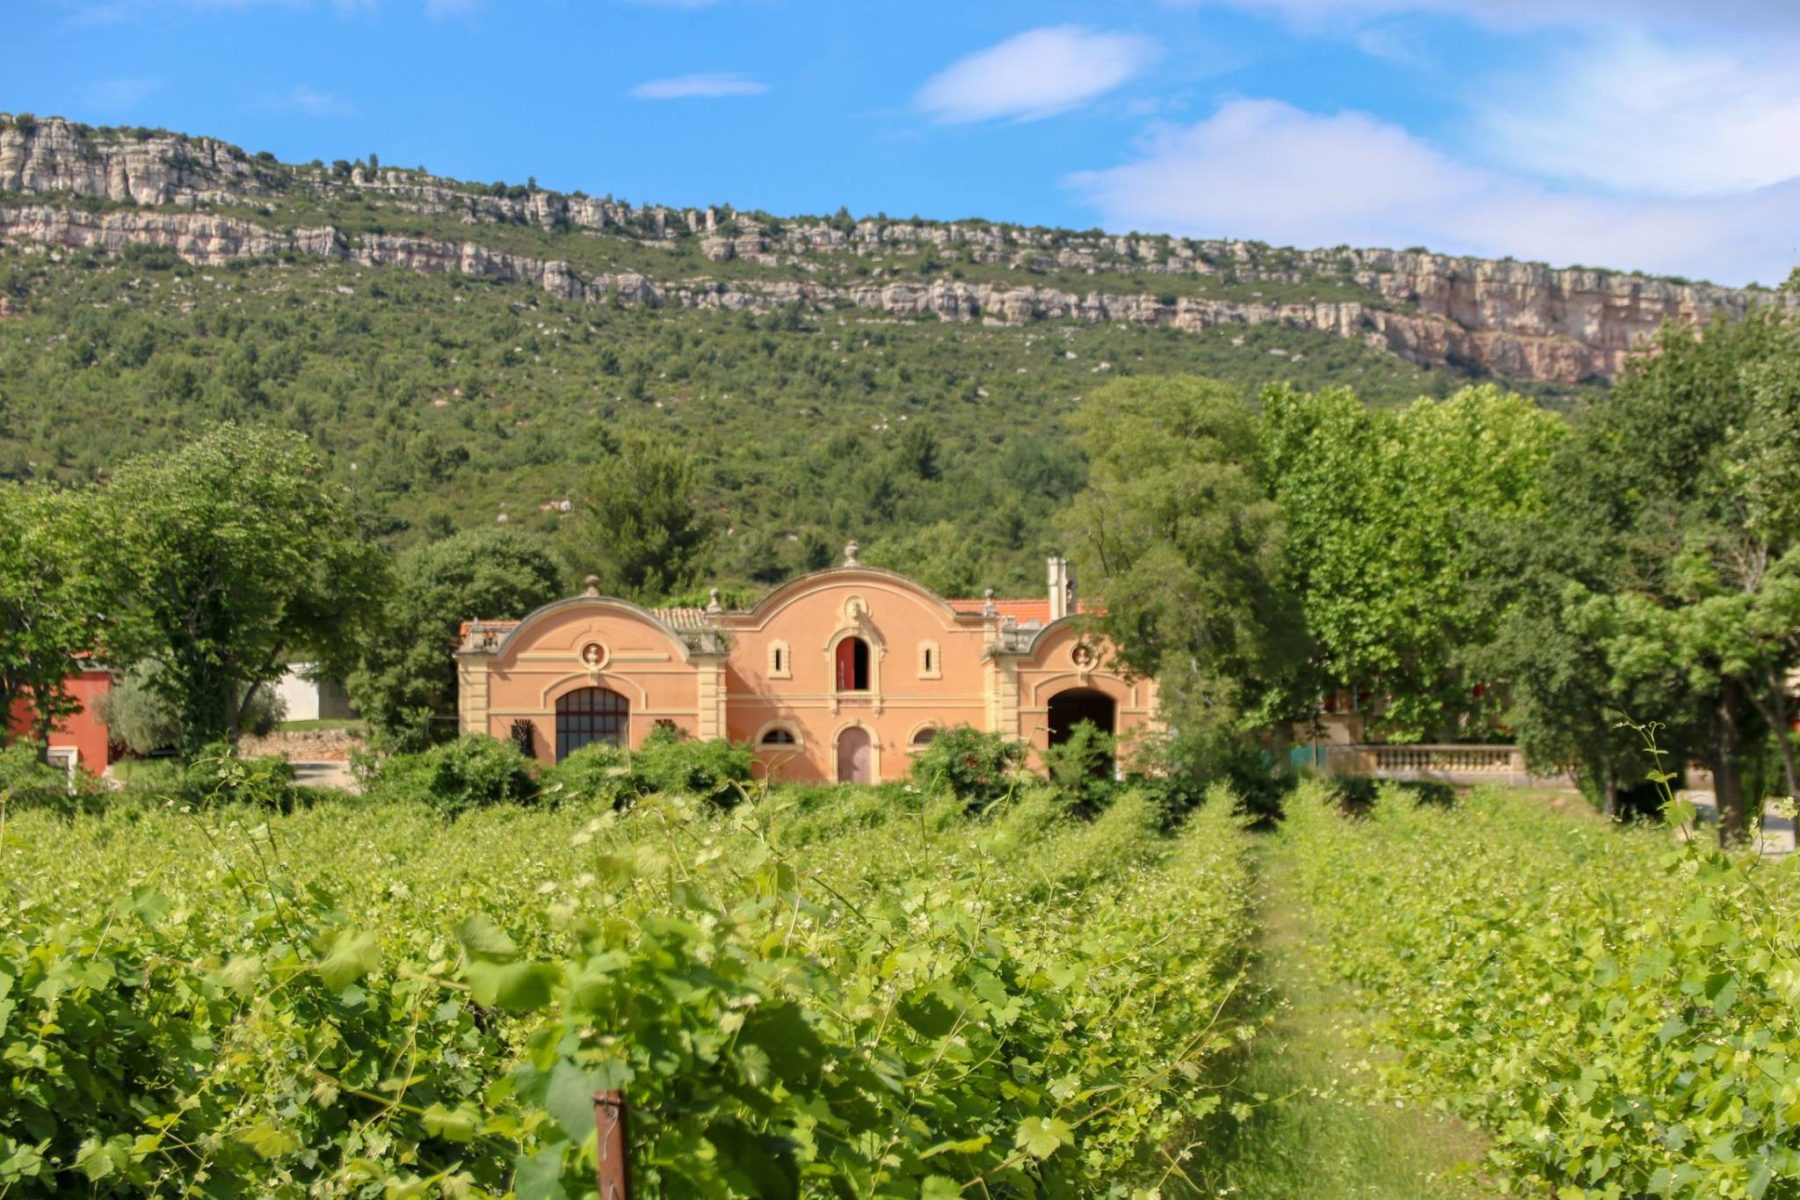 Vin Rosé Château de la Galinière - AOP Côtes de Provence